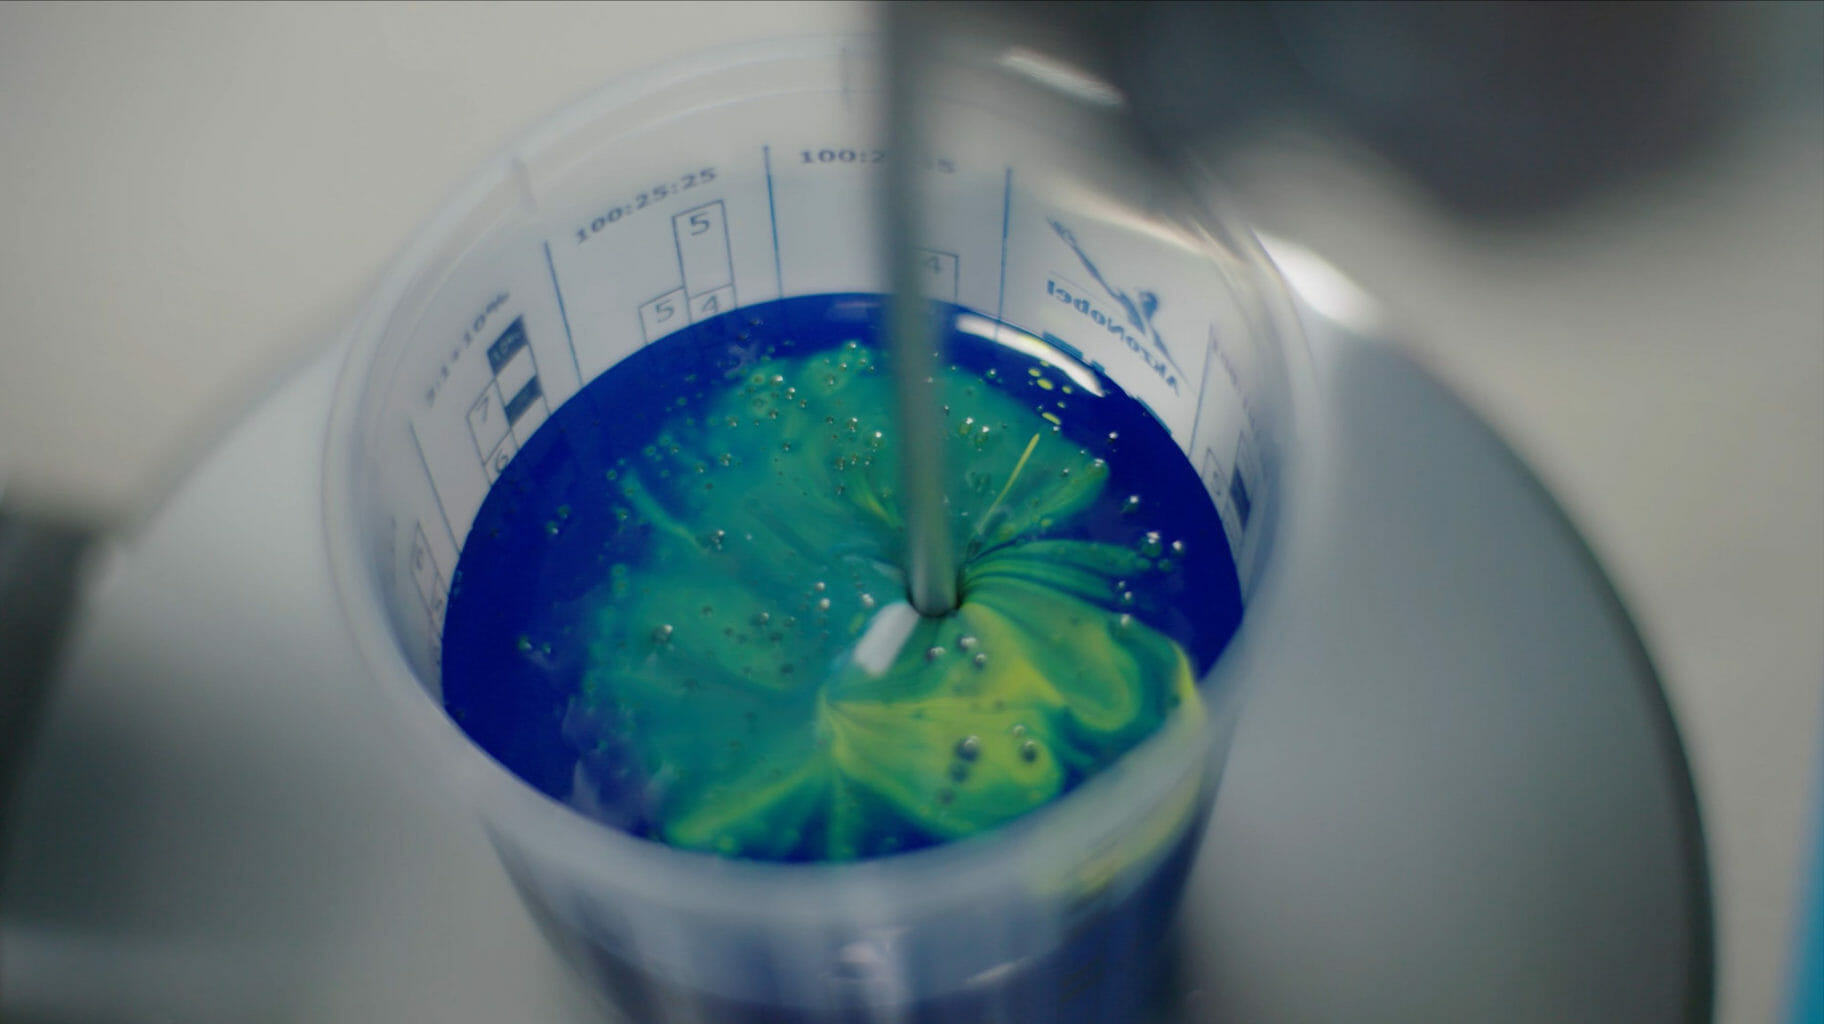 vue rapprochée d’une bouteille avec de la peinture bleue et verte